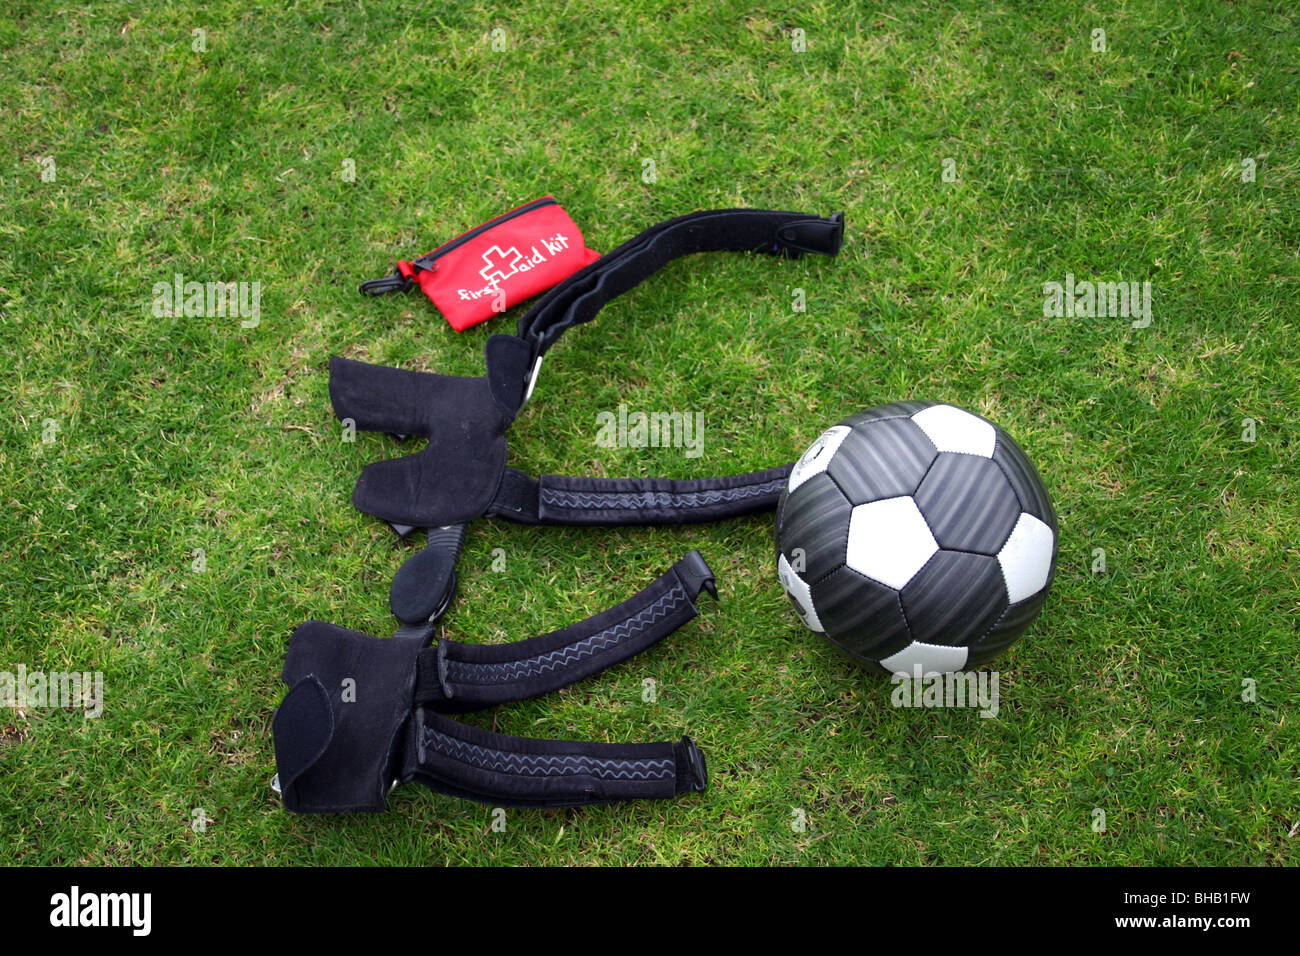 Fußballer Knie Orthese legt neben einem Fußball und erste Hilfe Kit vor Spiel Stockfoto